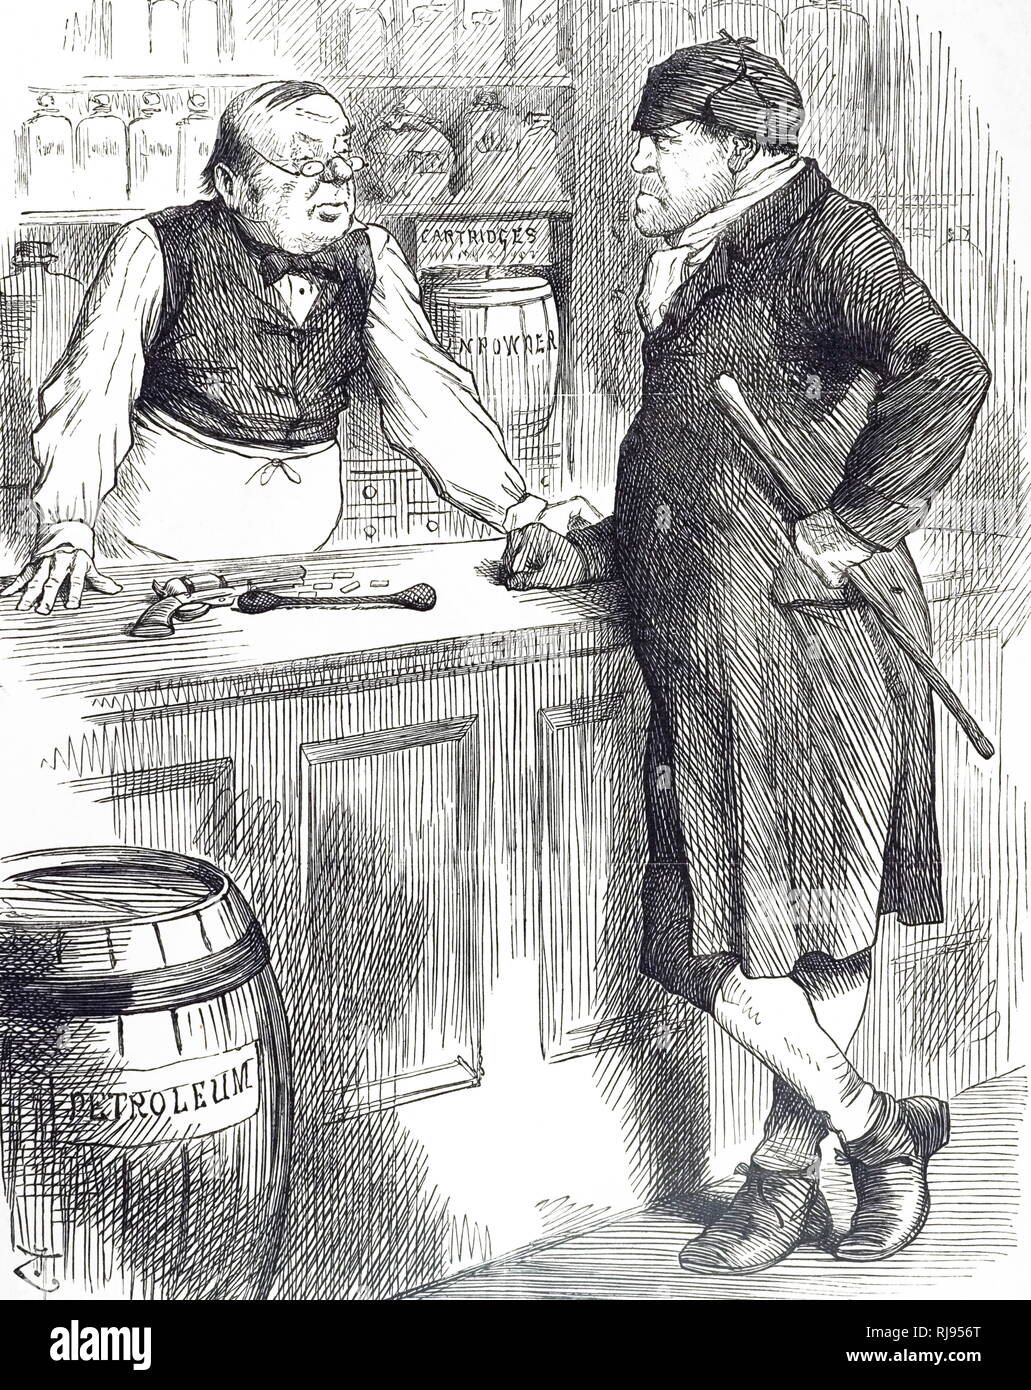 Ein Cartoon kommentierte die Kritik an den Giften handeln. Illustriert von John Tenniel (1820-1914) ein englischer Illustrator Grafik Humorist und politischen Karikaturisten. Vom 19. Jahrhundert Stockfoto